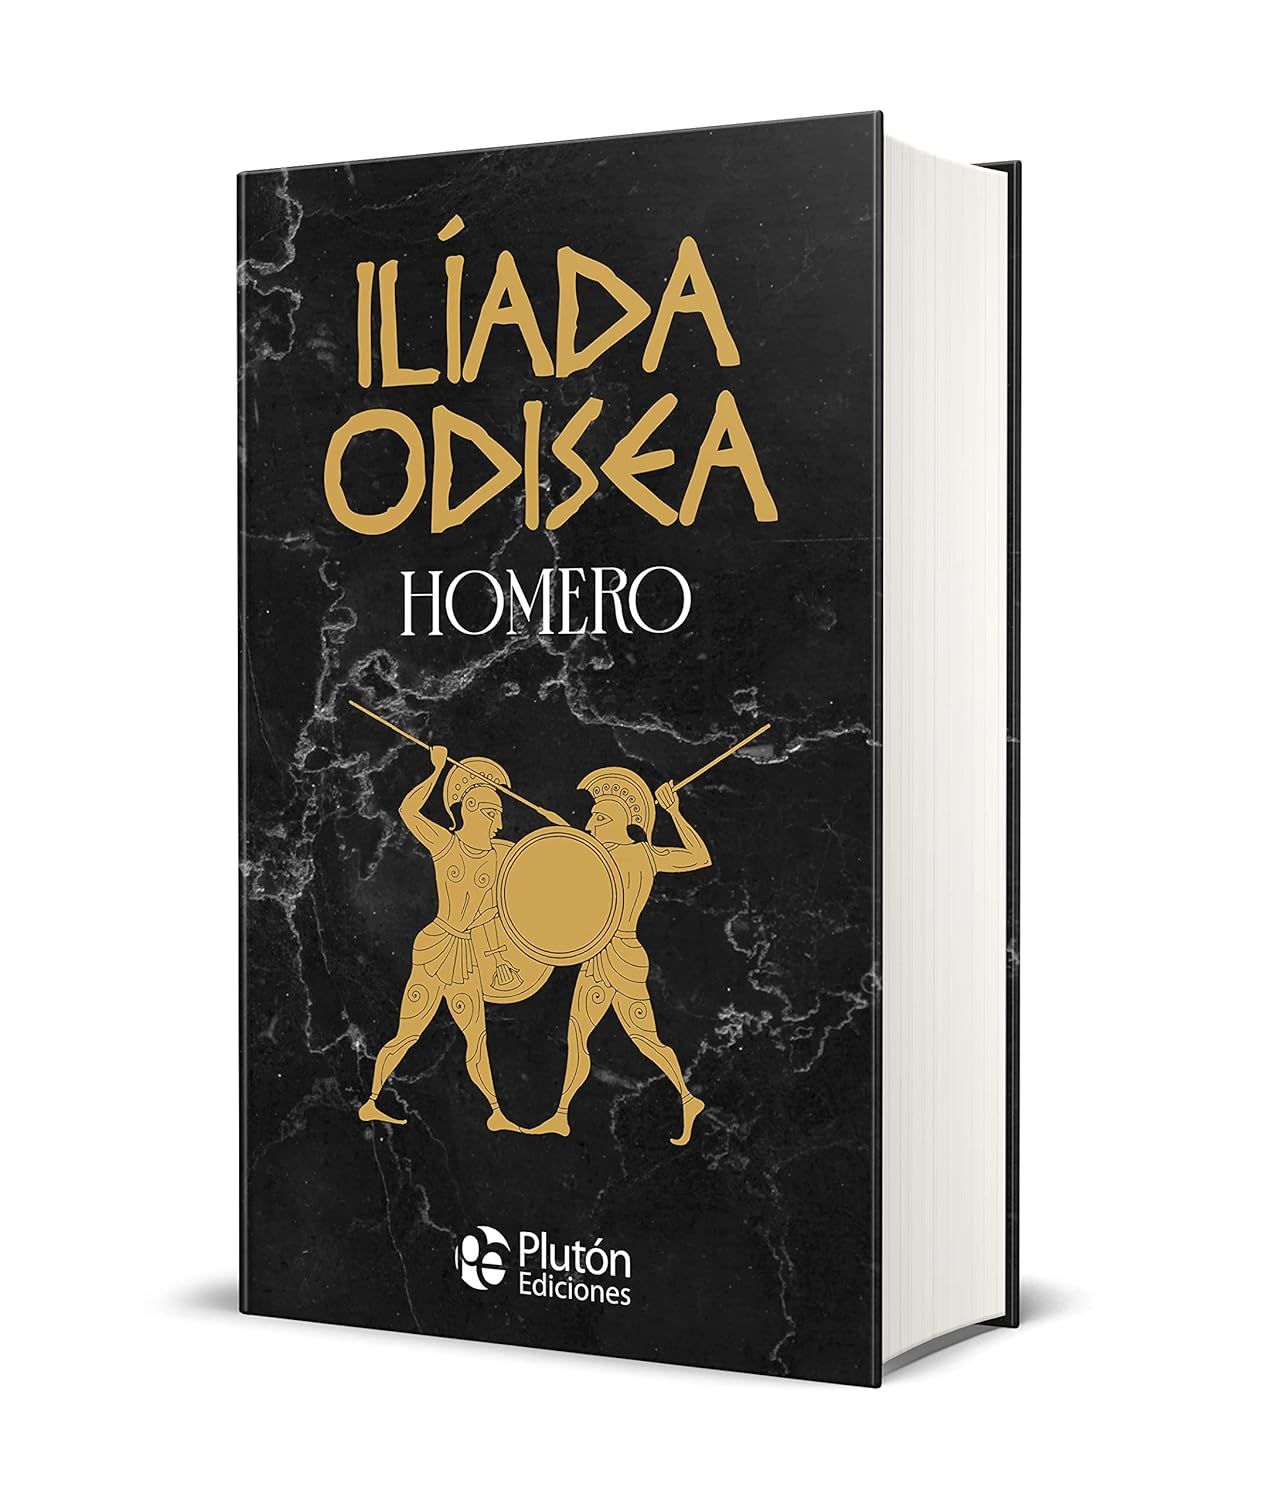 'Ilíada y Odisea' de la editorial Plutón Ediciones